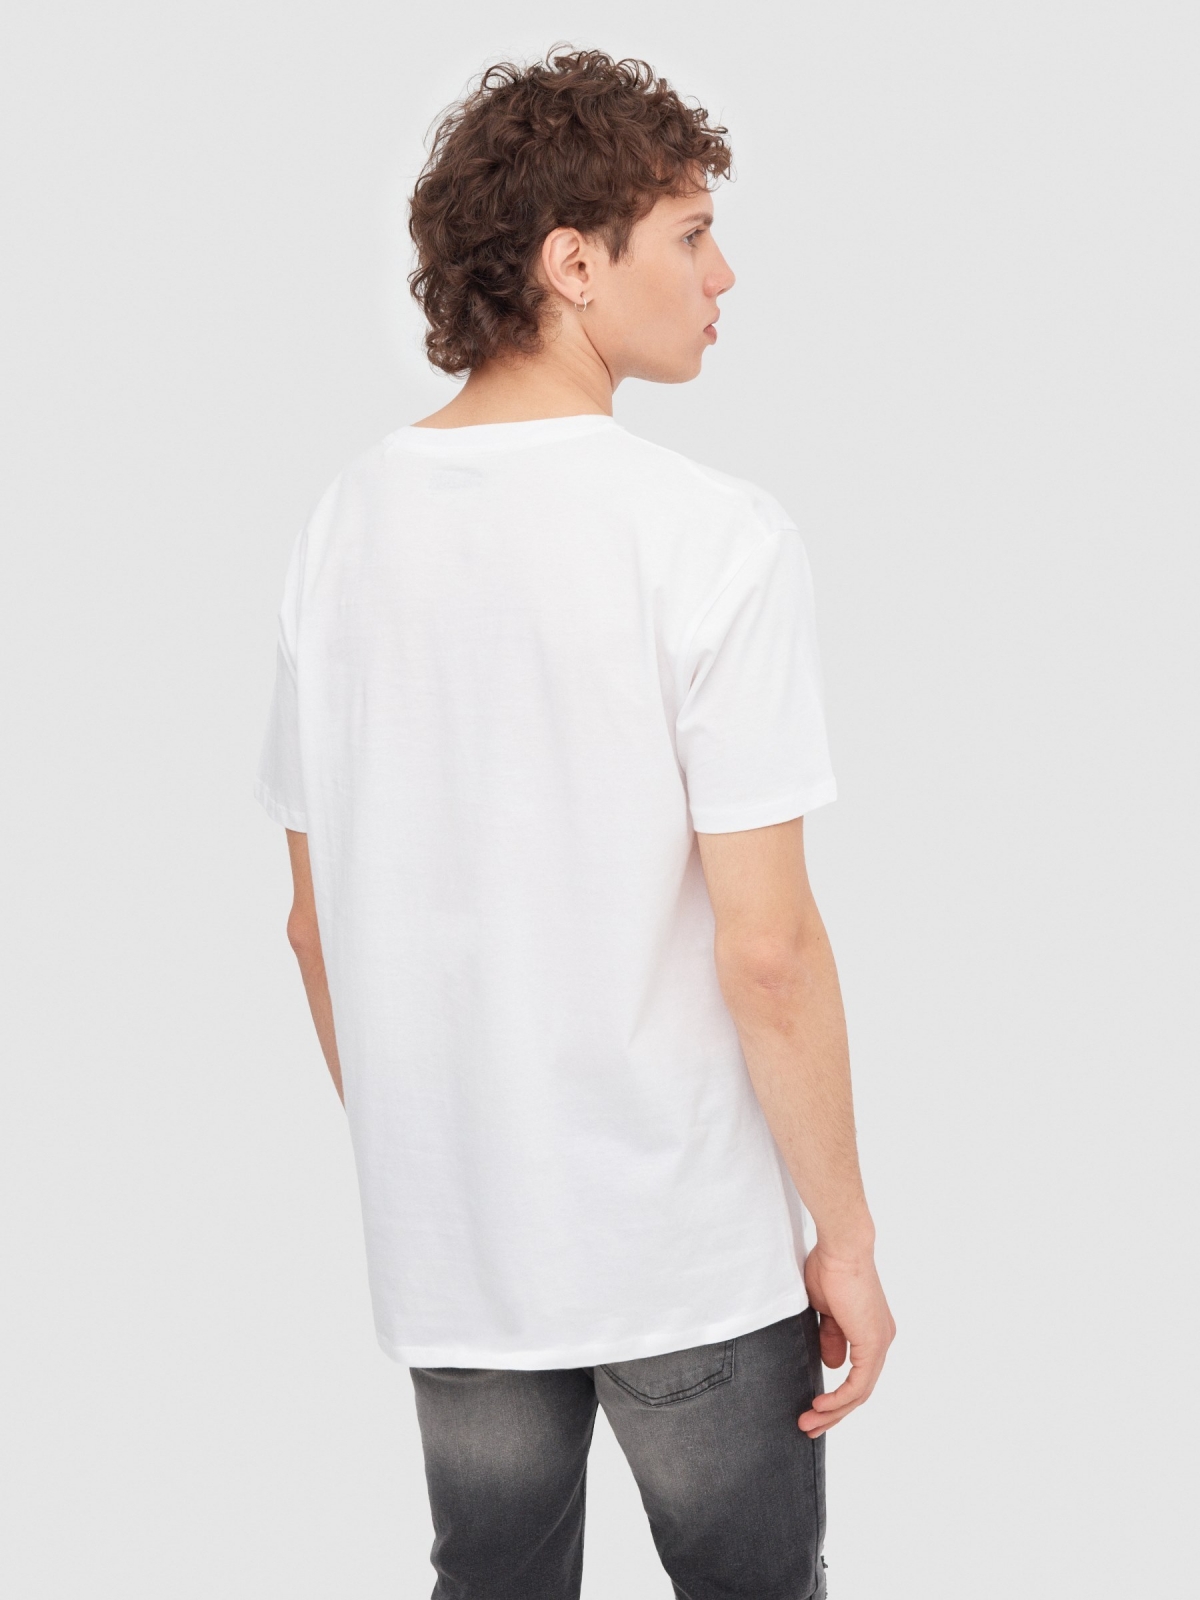 T-shirt das personagens de One Piece branco vista meia traseira